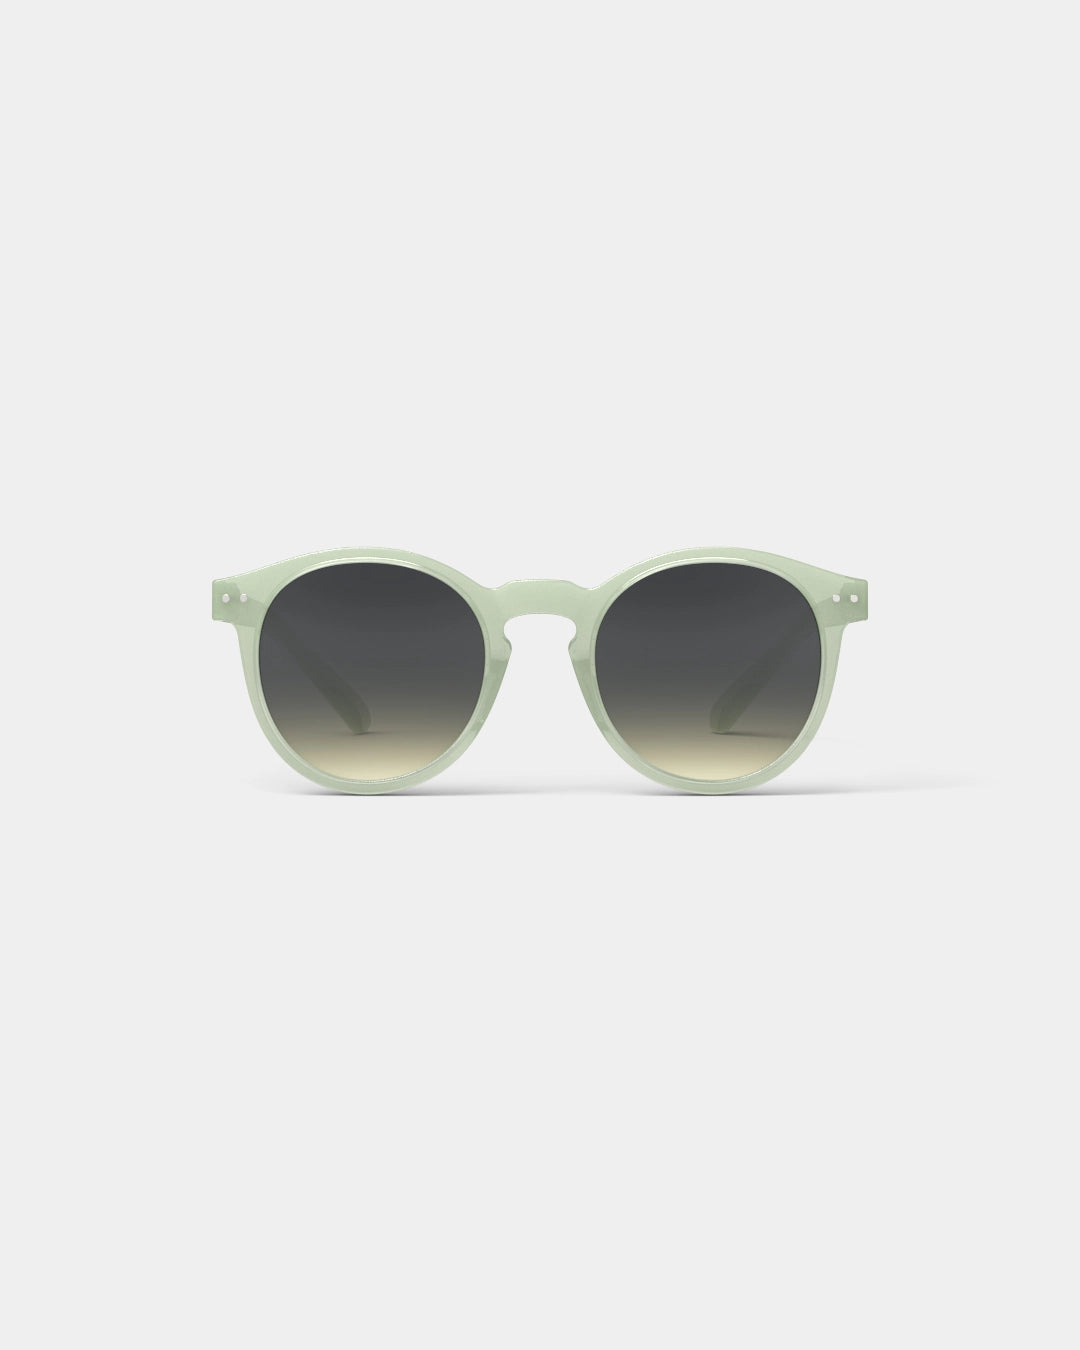 #M Sun Glasses - quiet green